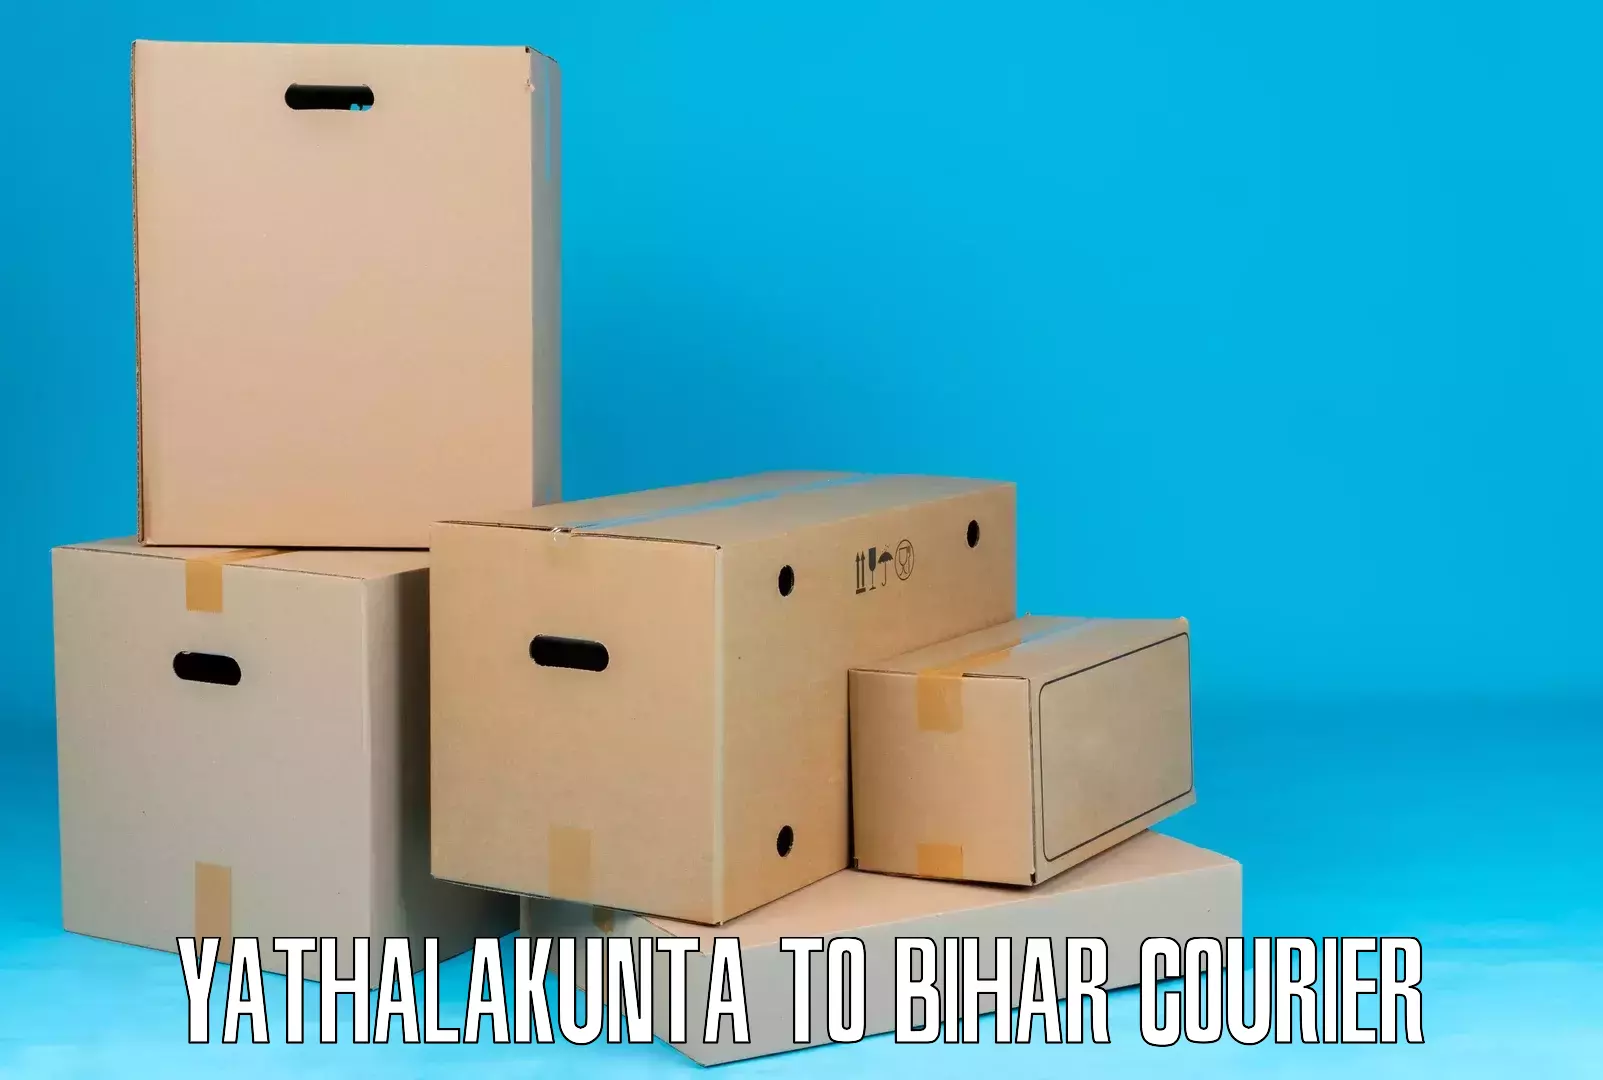 Urgent courier needs Yathalakunta to Korha